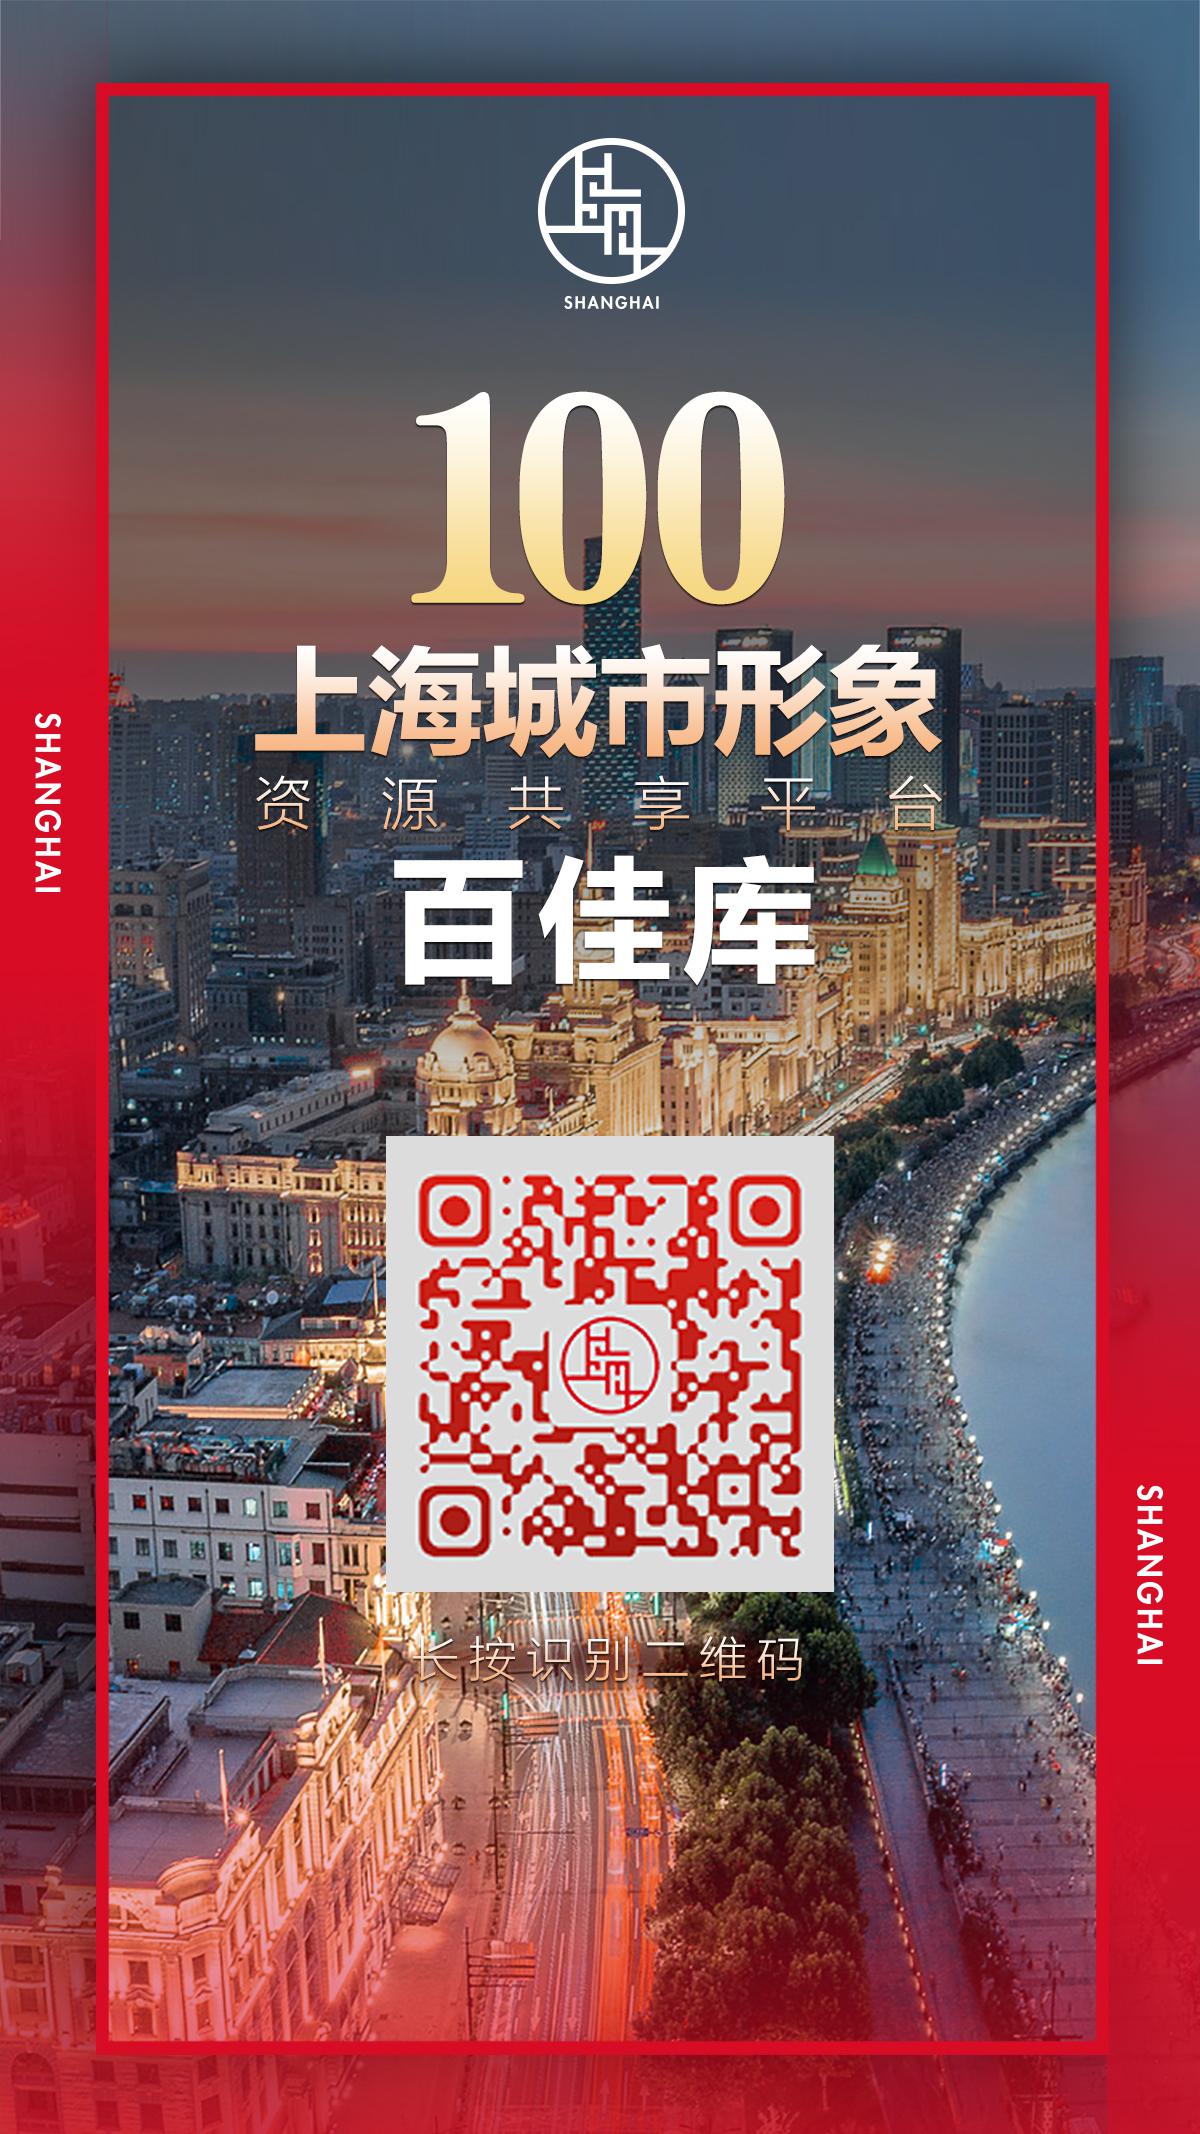 汇聚城市IP，“上海城市形象资源共享平台”启动建设